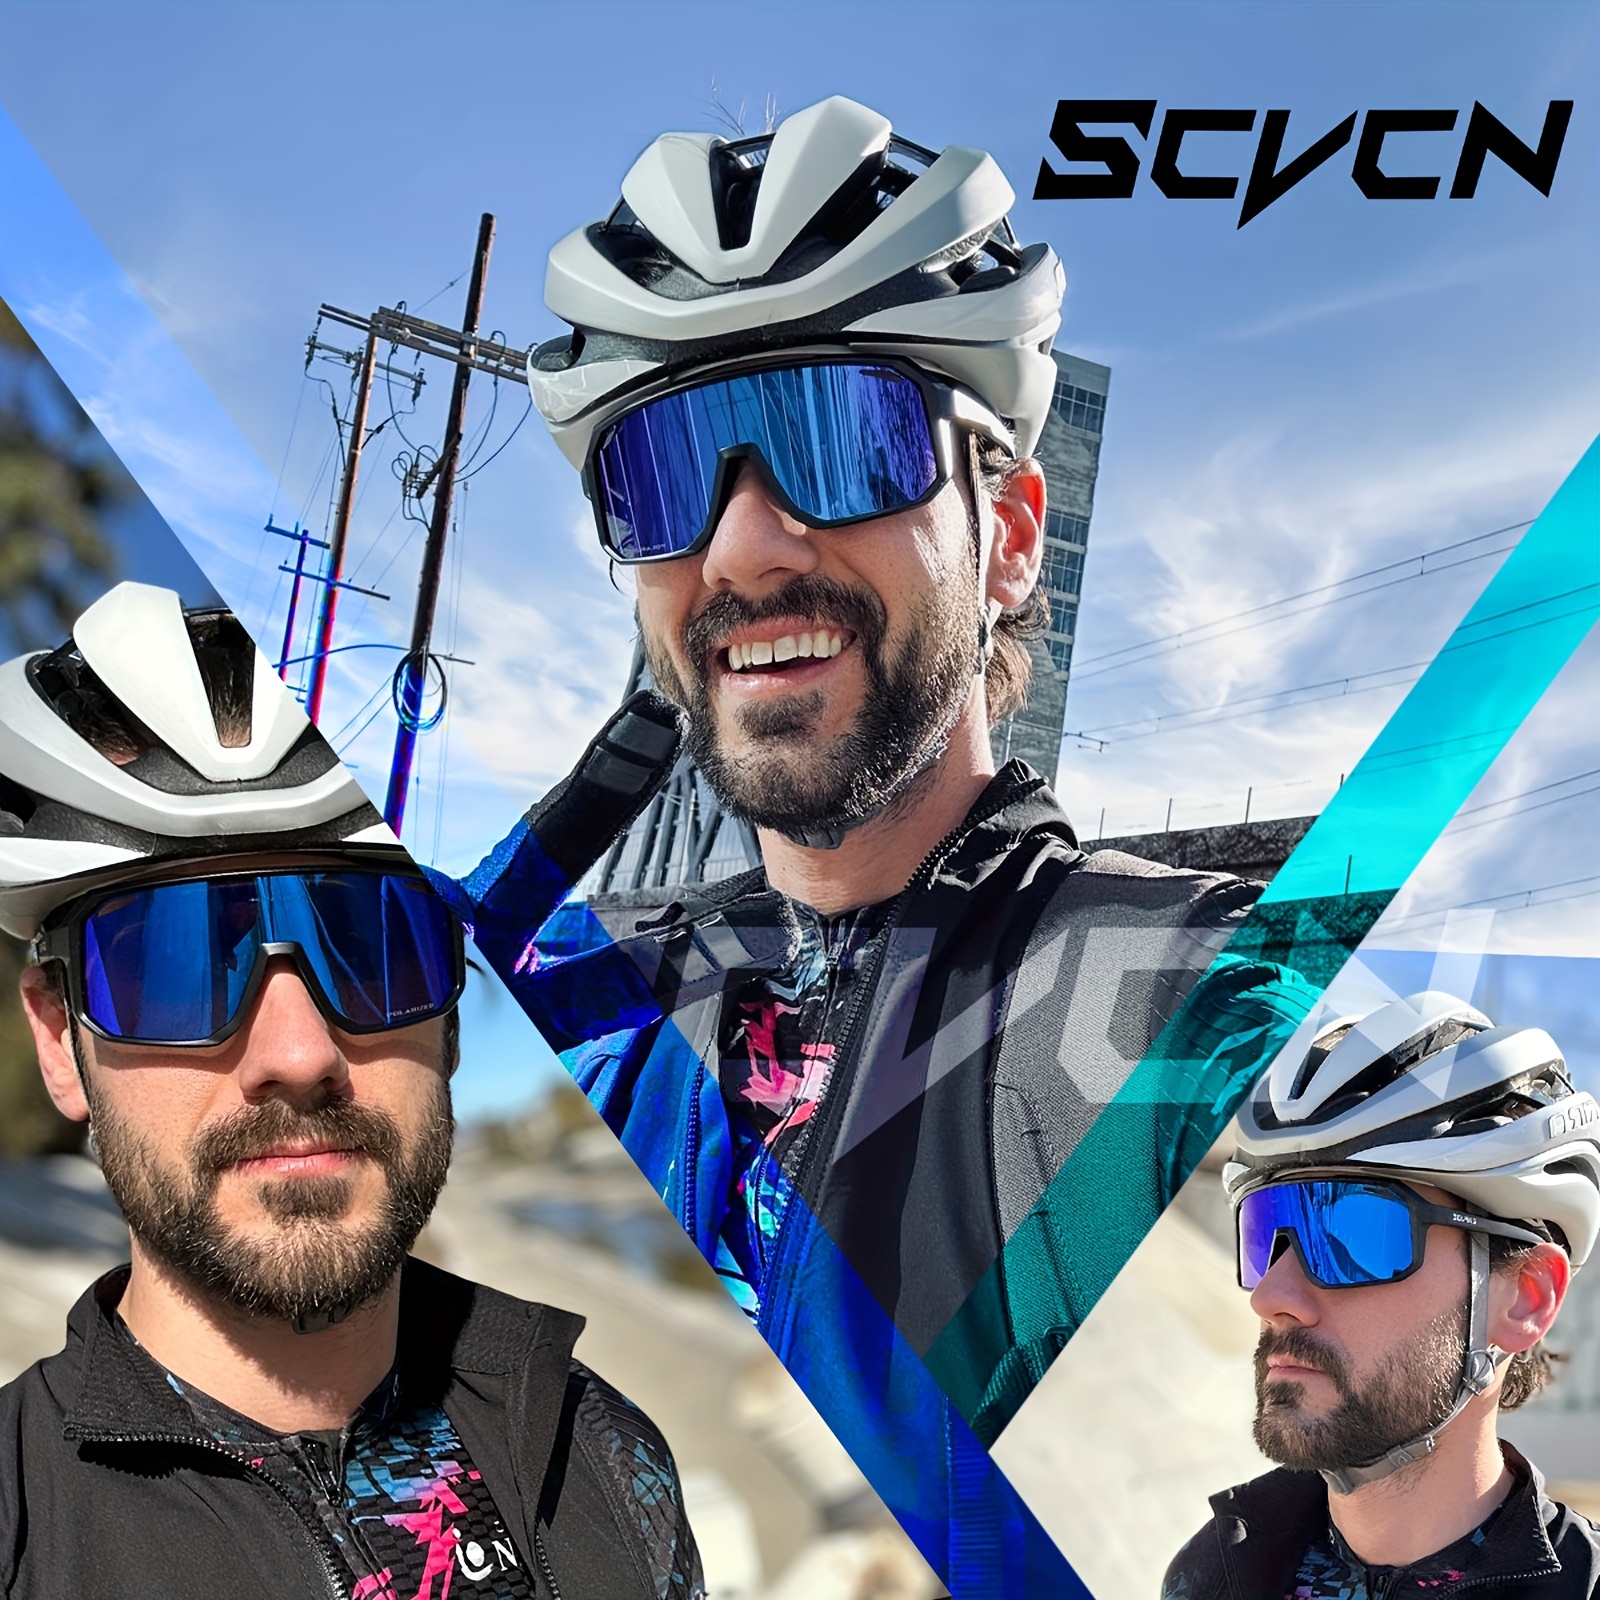 SCVCN,Googles,1 Lens No Box Cycling Sunglasses Outdoor Glasses MTB Men Women Sports Goggles, Safety Glasses UV400 Bicycle Glasses for Outdoor